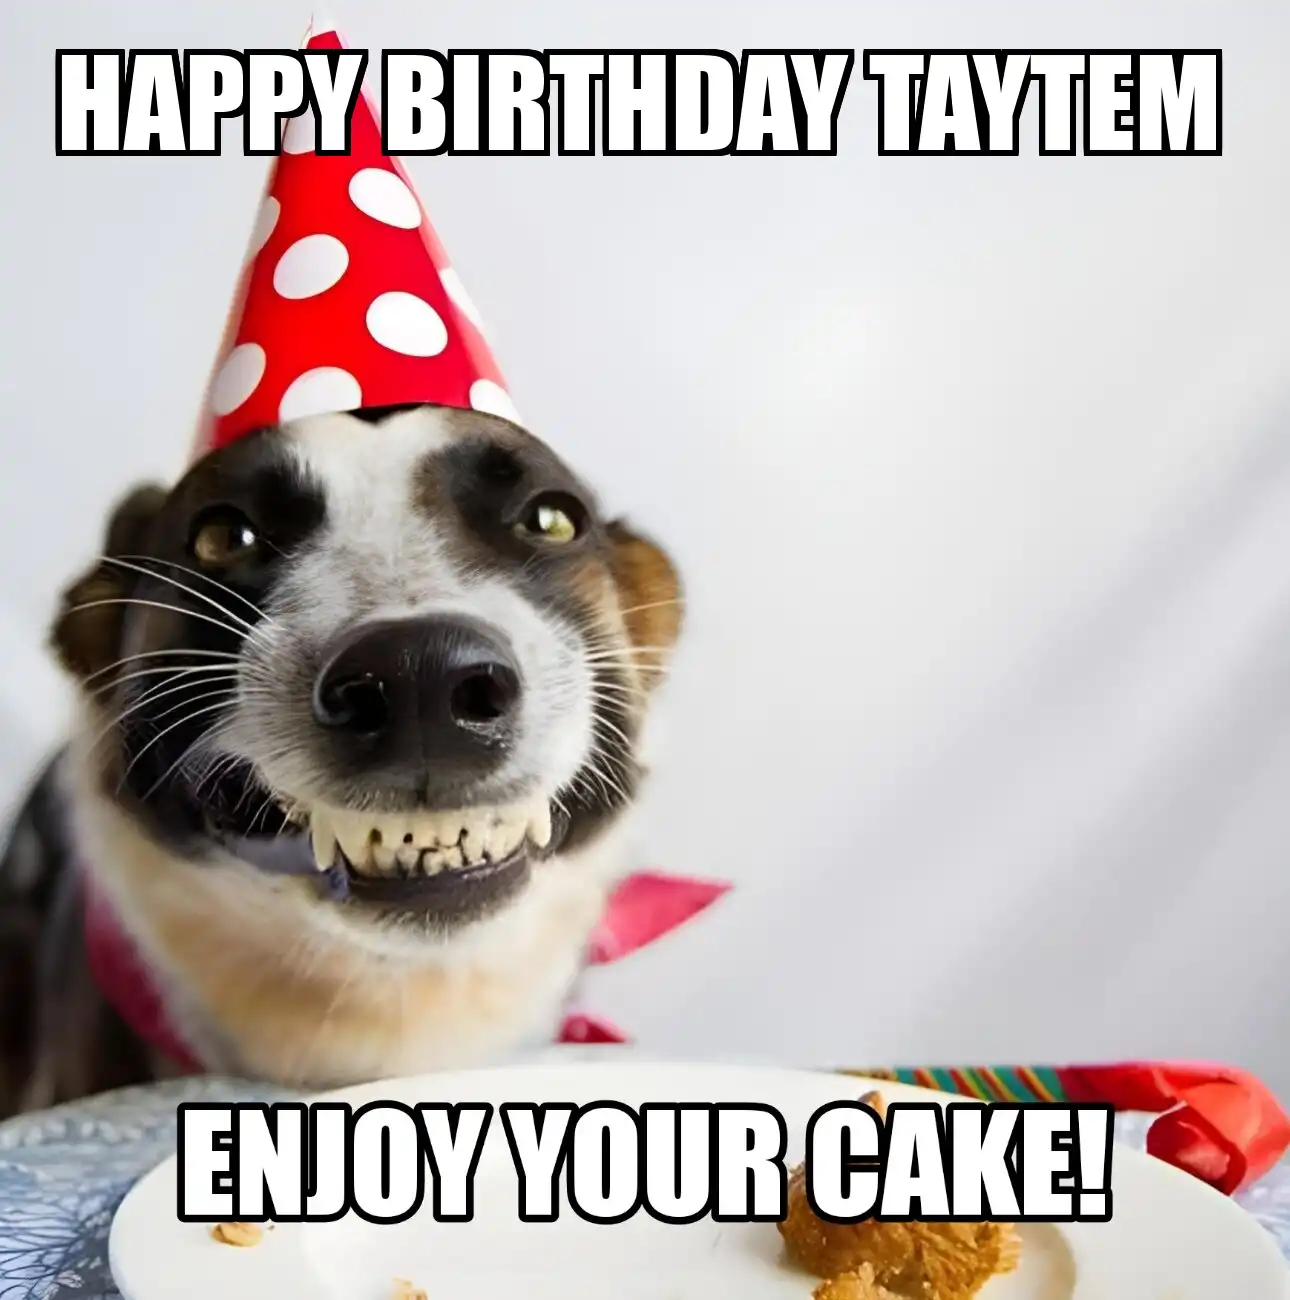 Happy Birthday Taytem Enjoy Your Cake Dog Meme